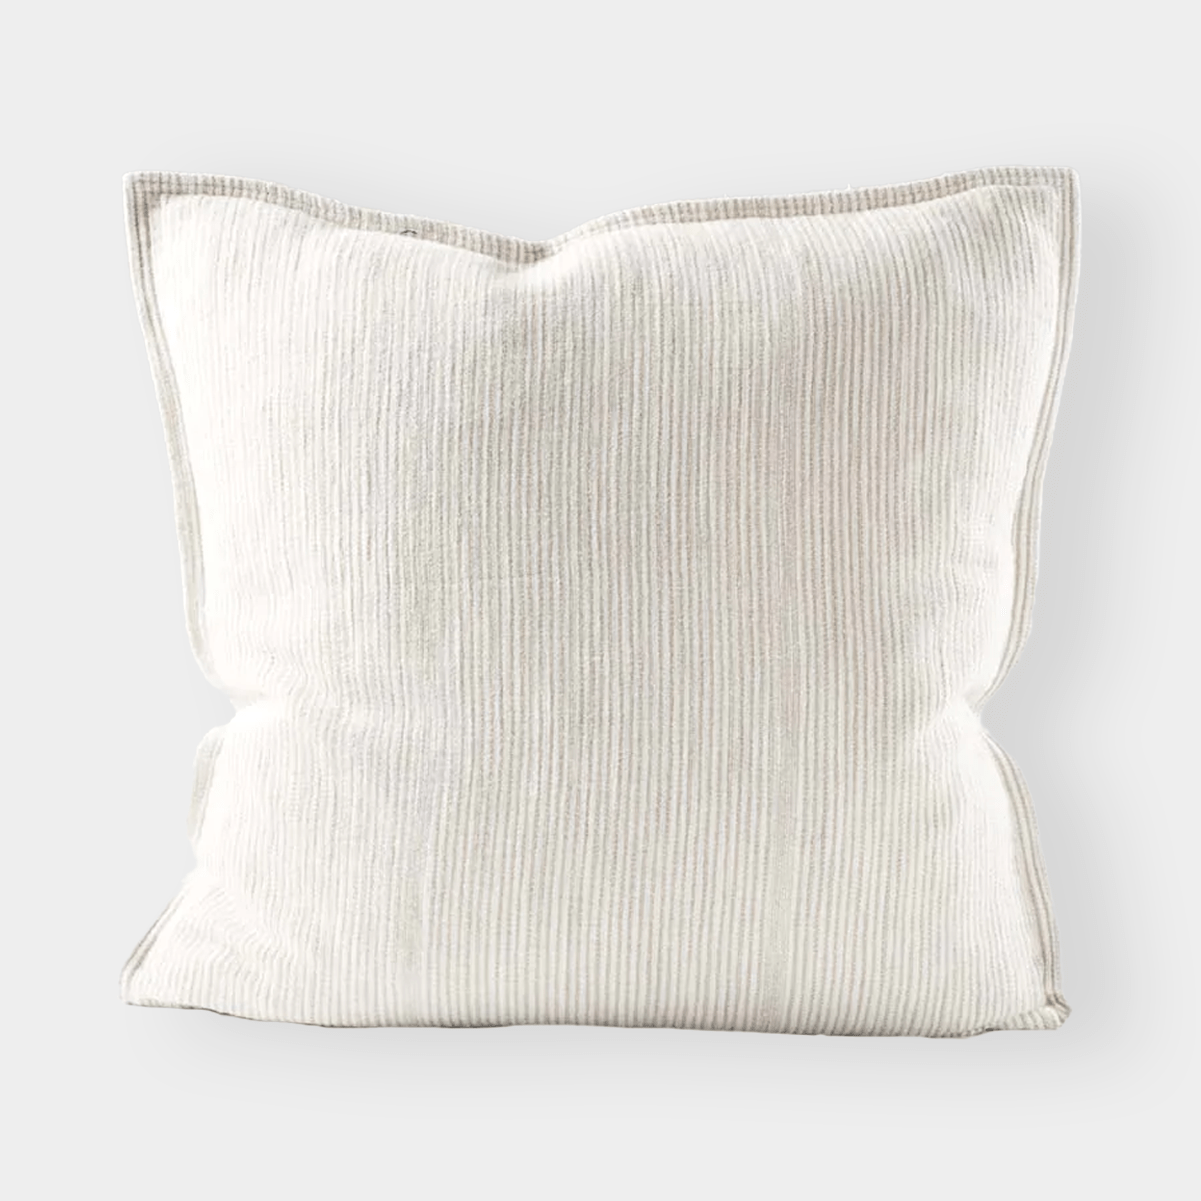 Eadie Lifestyle Cushions Eadie Lifestyle Myra Linen Cushion - Natural/White, Various Sizes (7843766763769)